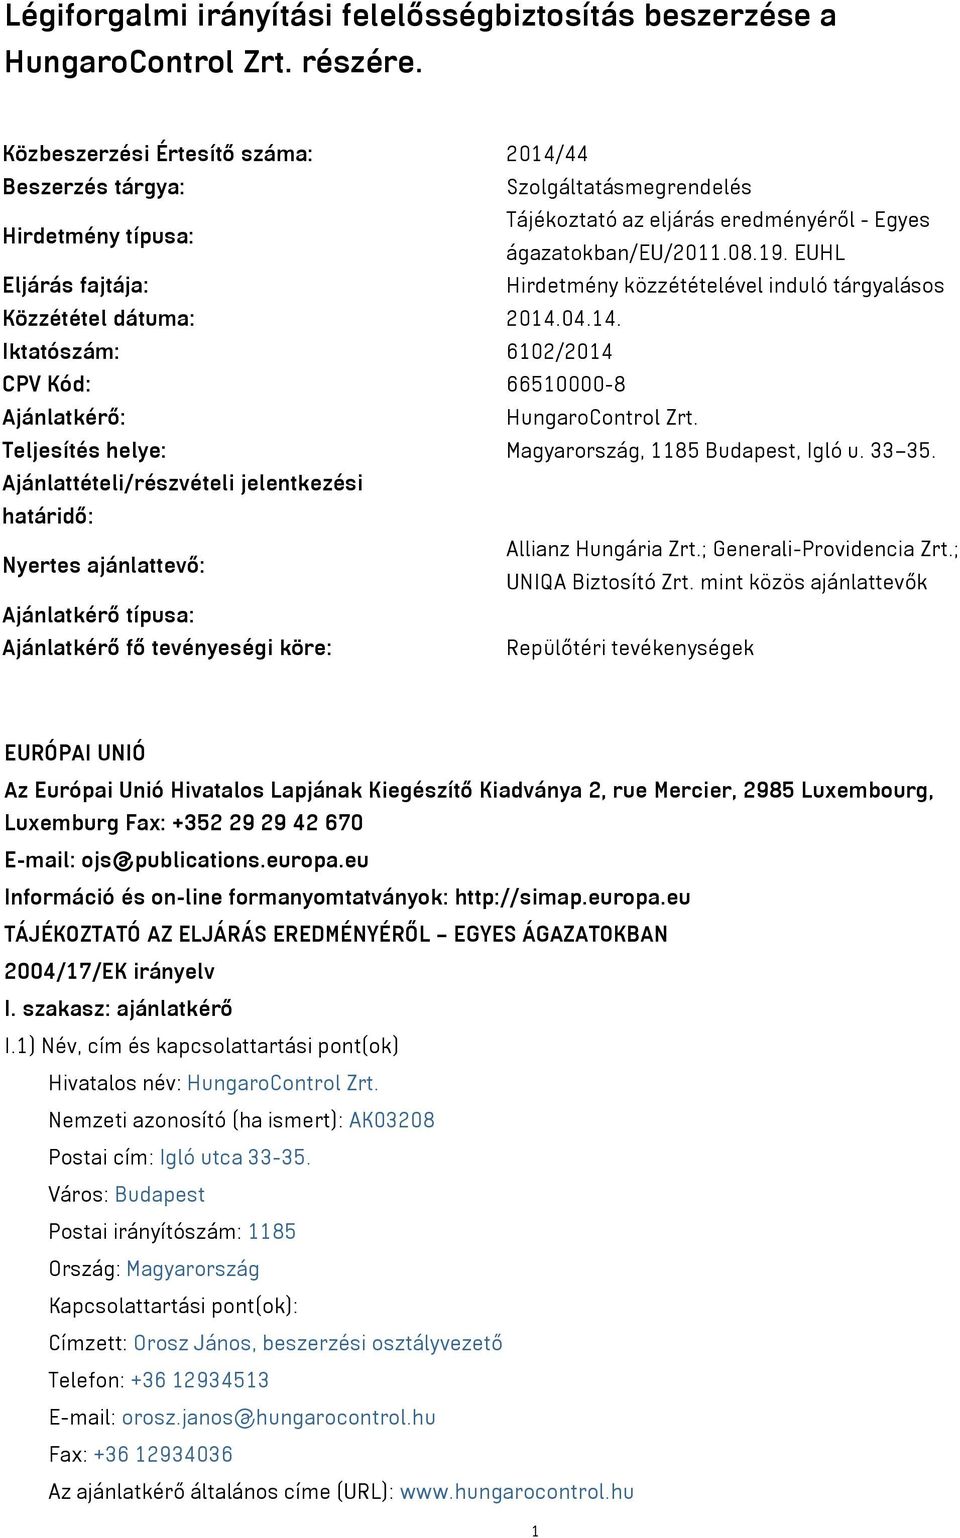 EUHL Eljárás fajtája: Hirdetmény közzétételével induló tárgyalásos Közzététel dátuma: 2014.04.14. Iktatószám: 6102/2014 CPV Kód: 66510000-8 Ajánlatkérő: HungaroControl Zrt.